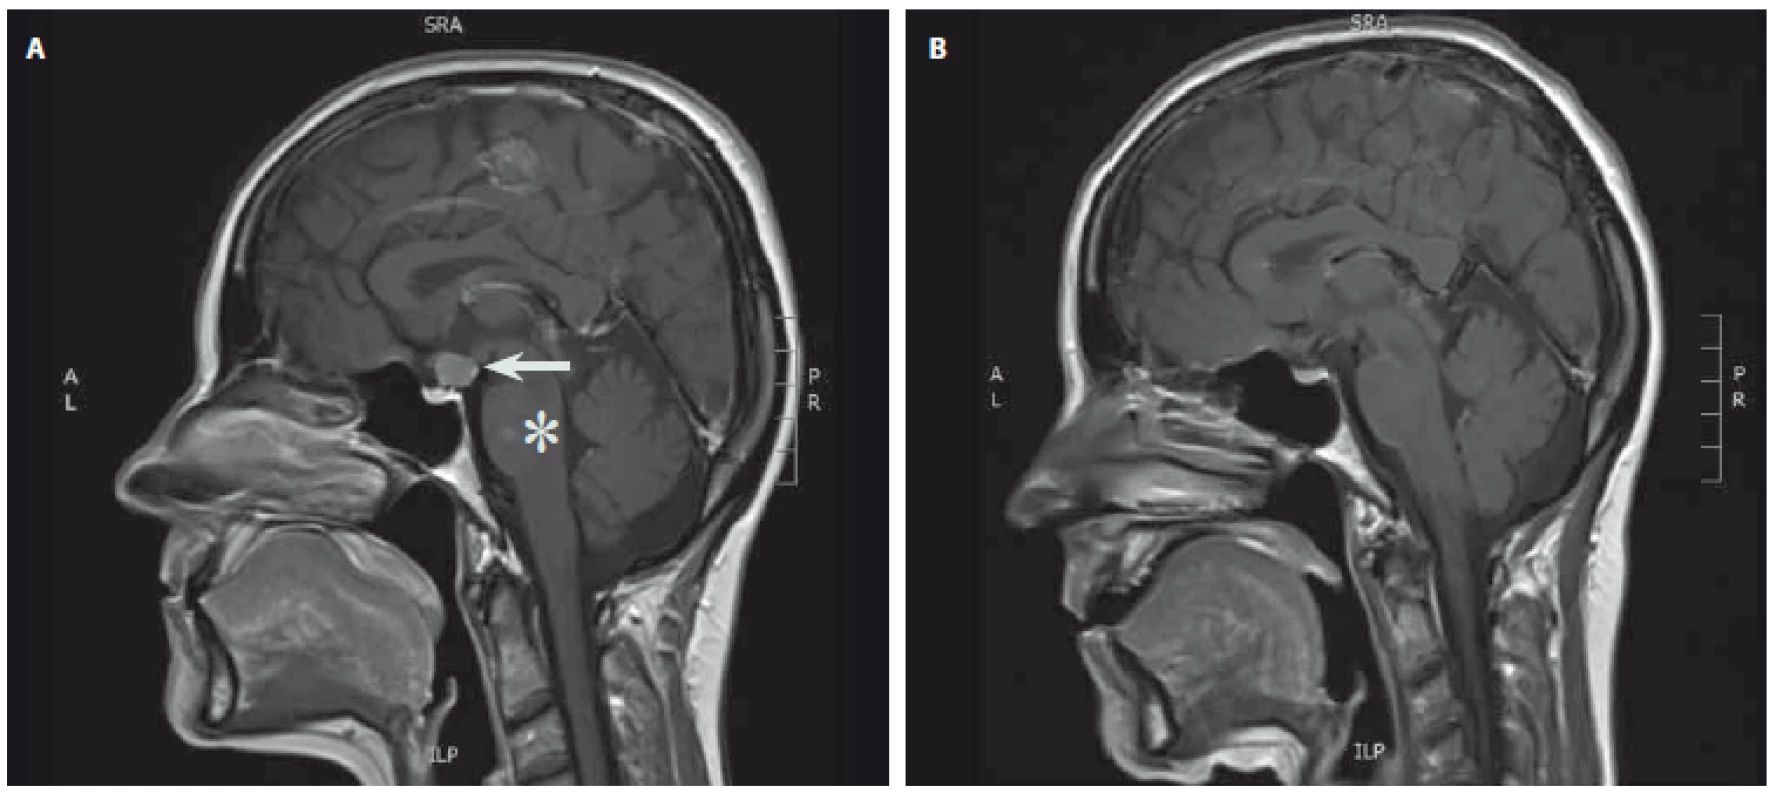 MR hypofýzy (T1 vážené sagitální skeny s kontrastní látkou). A – tumorózní expanze v oblasti infundibula lehce komprimující optické chiasma (šipka), v pontu postkontrastně se sytící okrsek odpovídající cévní malformaci typu kapilární teleangiektázie (hvězdička); B – stav po kompletním odstranění nádoru infundibula.
Fig. 1. MRI of the pituitary gland (T1-weighted sagittal scans with contrast). A – tumor of the infundibulum compressing optic chiasm (arrow). Capillary teleangiectasia of the pons with contrast enhancement (asterisk); B – condition after complete removal of the tumor.